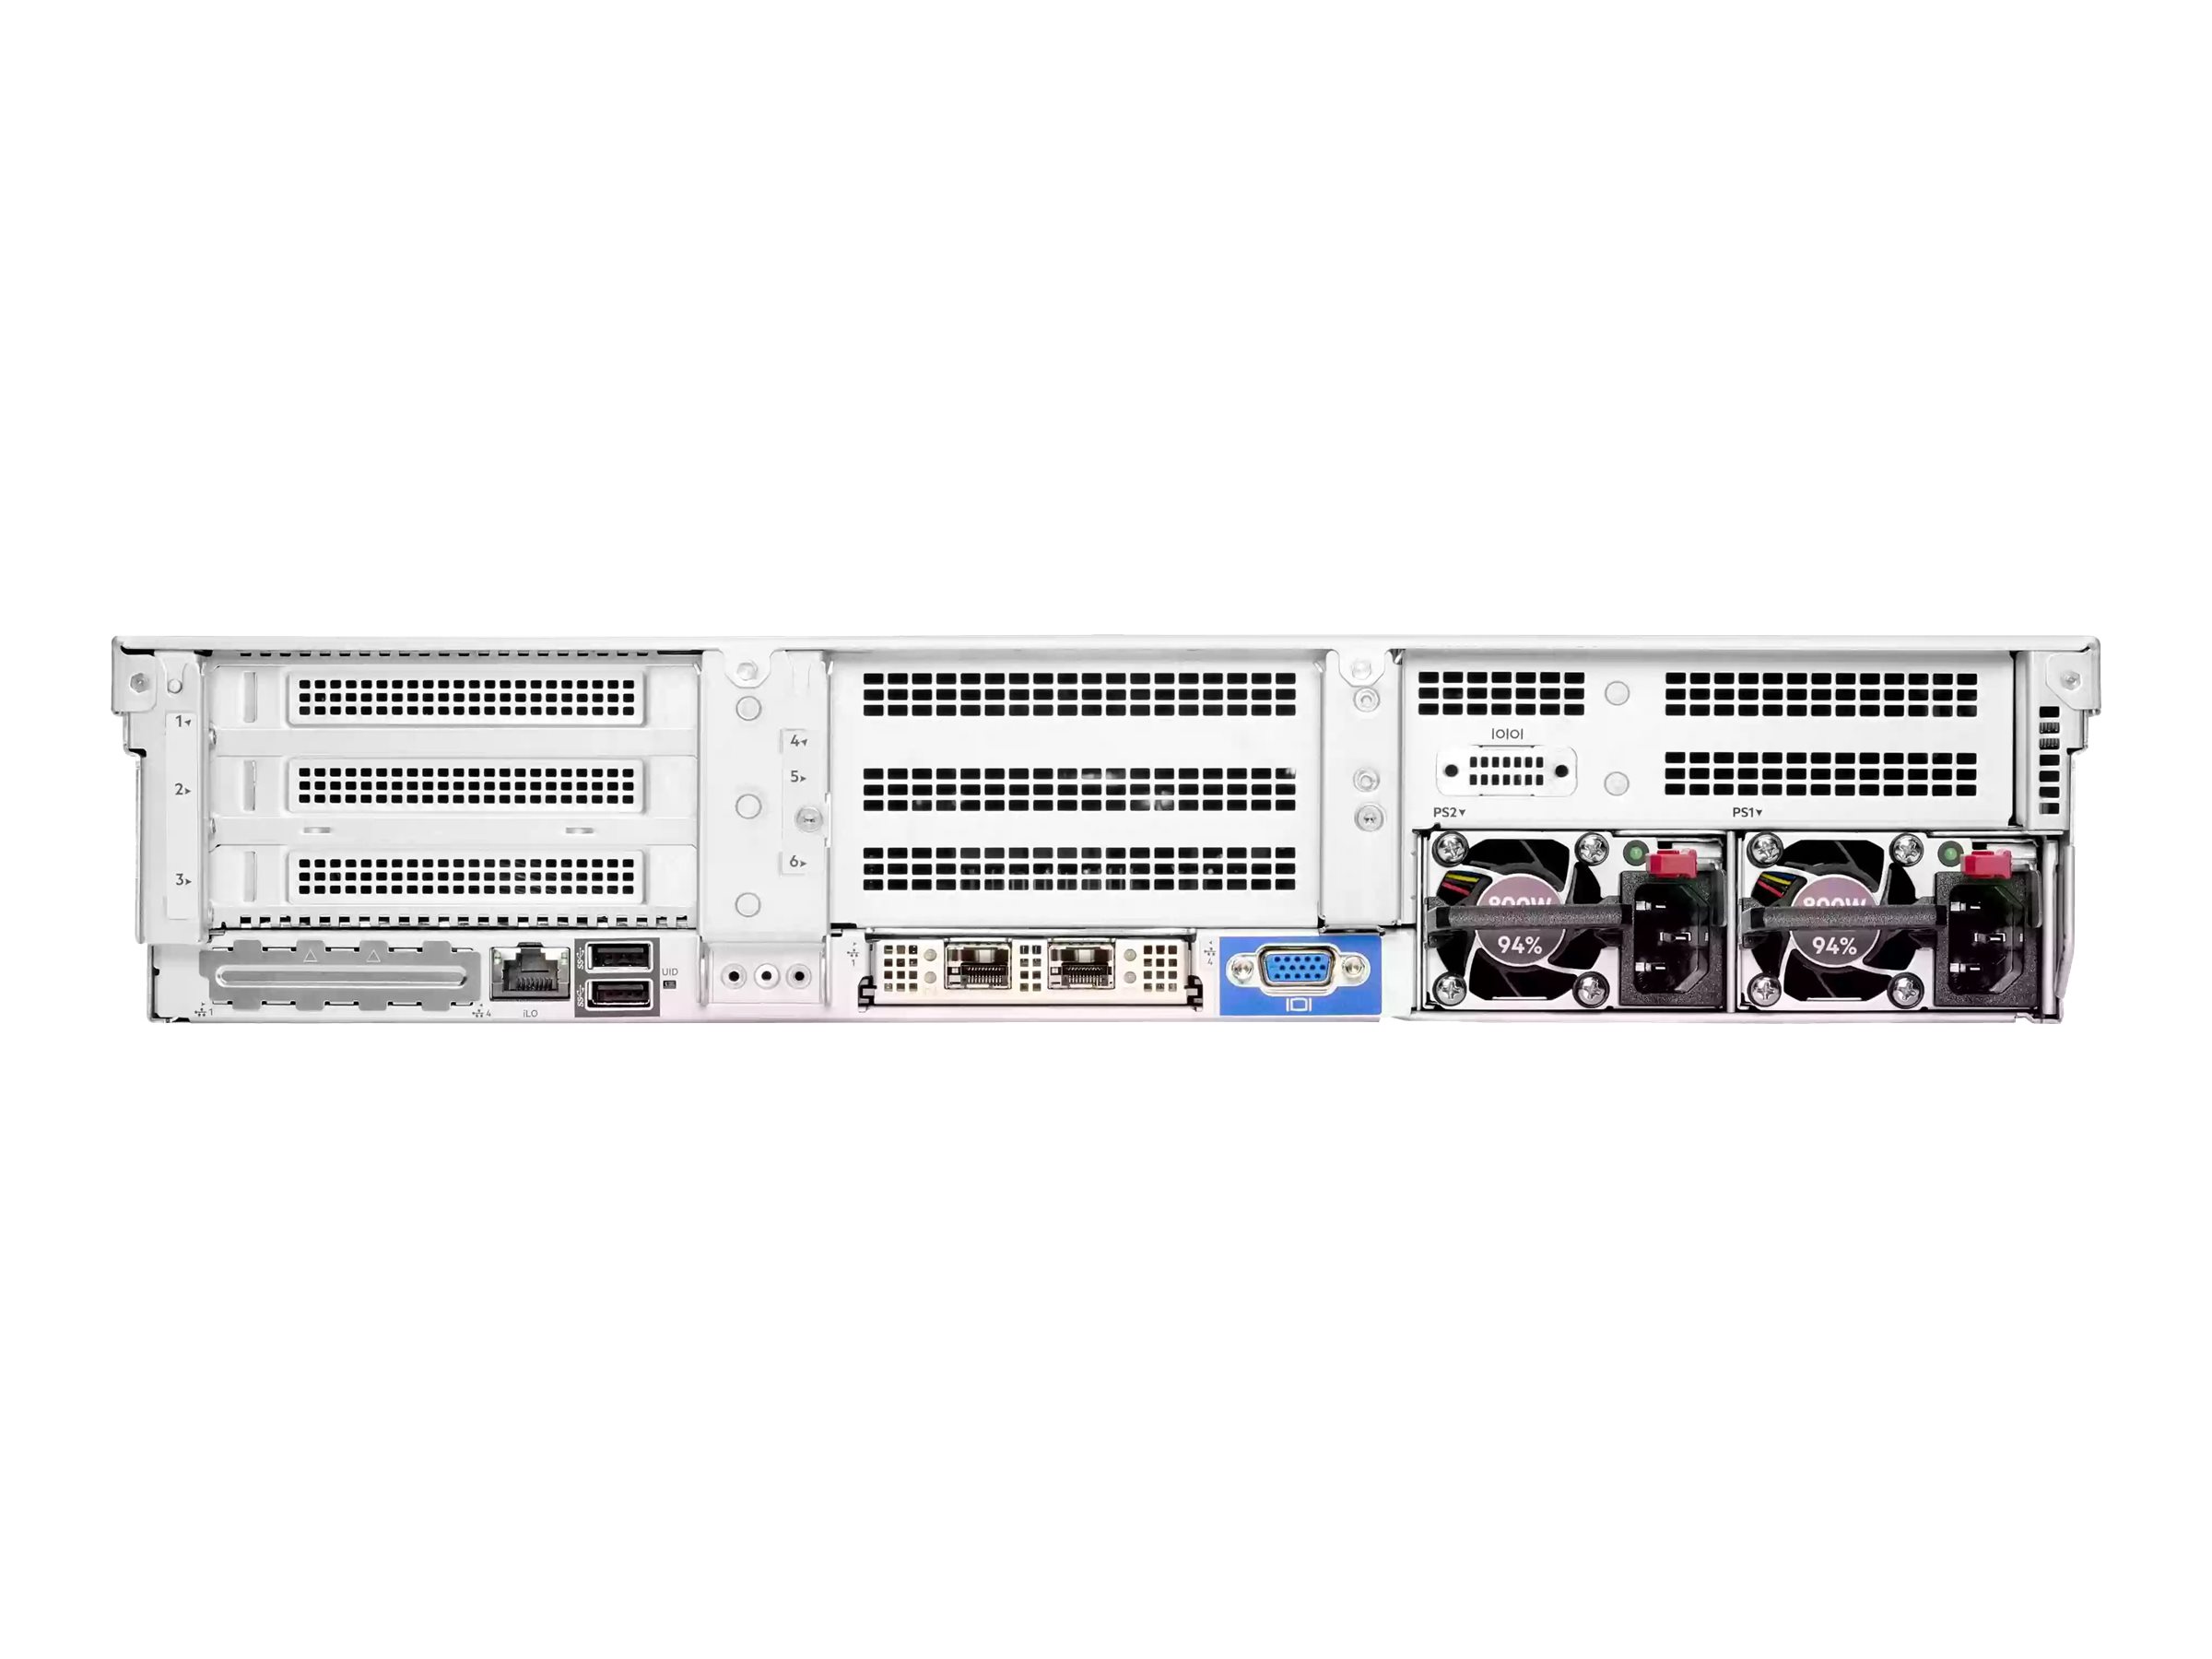 HPE ProLiant DL385 Gen10 Plus V2 - Serveur - Montable sur rack - 2U - 2 voies - pas de processeur jusqu'à - RAM 0 Go - SATA/SAS/PCI Express - hot-swap 2.5" baie(s) - aucun disque dur - moniteur : aucun - CTO - P38412-B21 - Serveurs rack